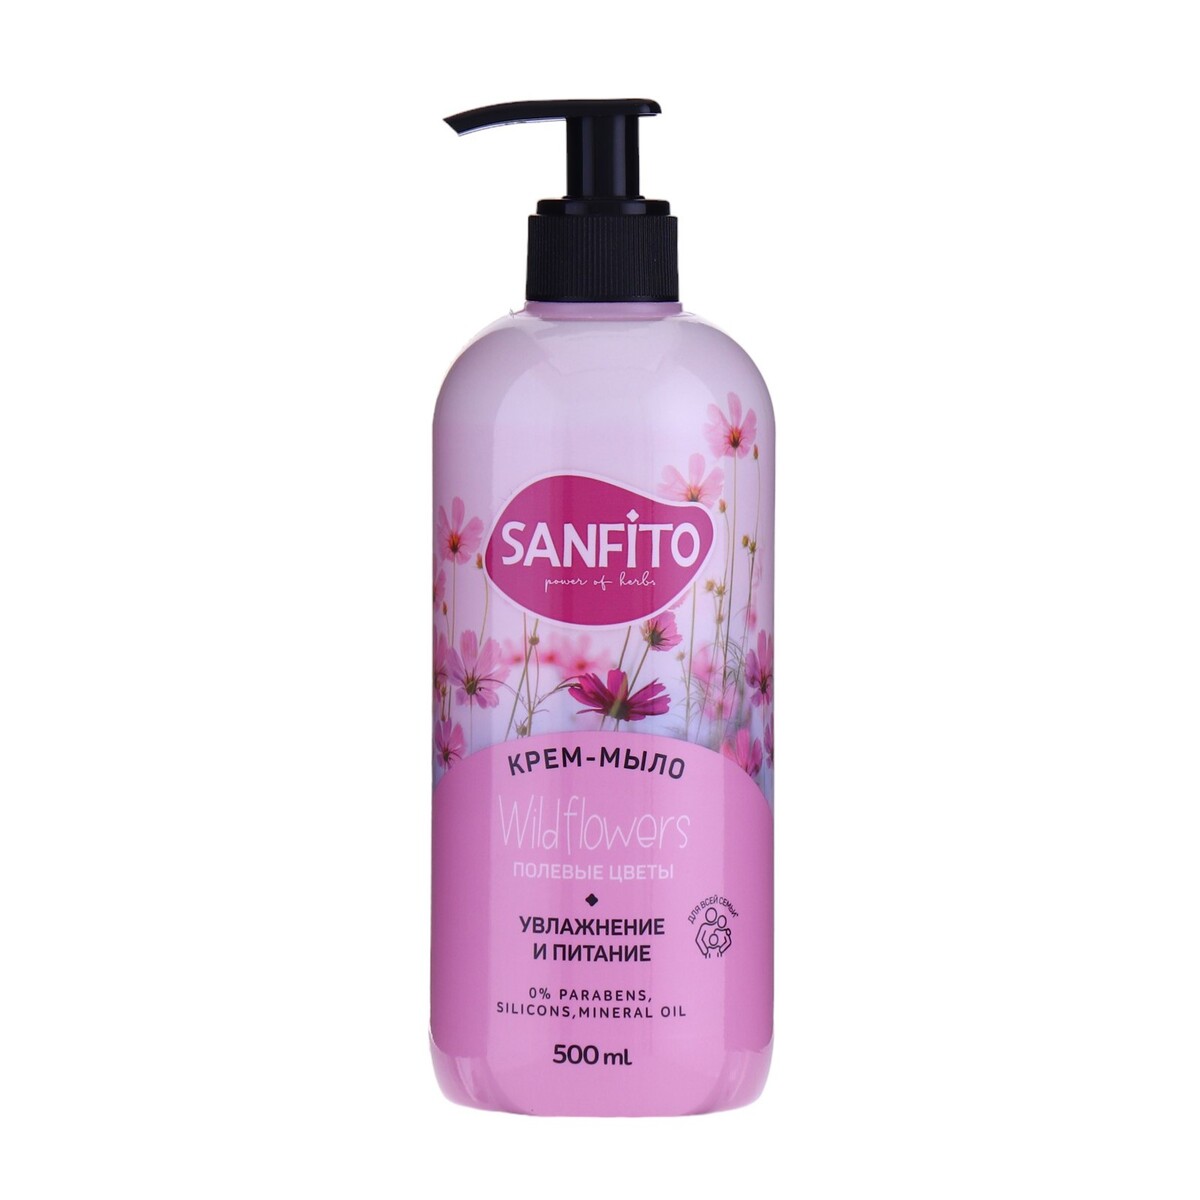 Sanfito крем-мыло sensitive, полевые цветы, 500 мл жидкое мыло energy sanfito сила луговых трав 1000 мл